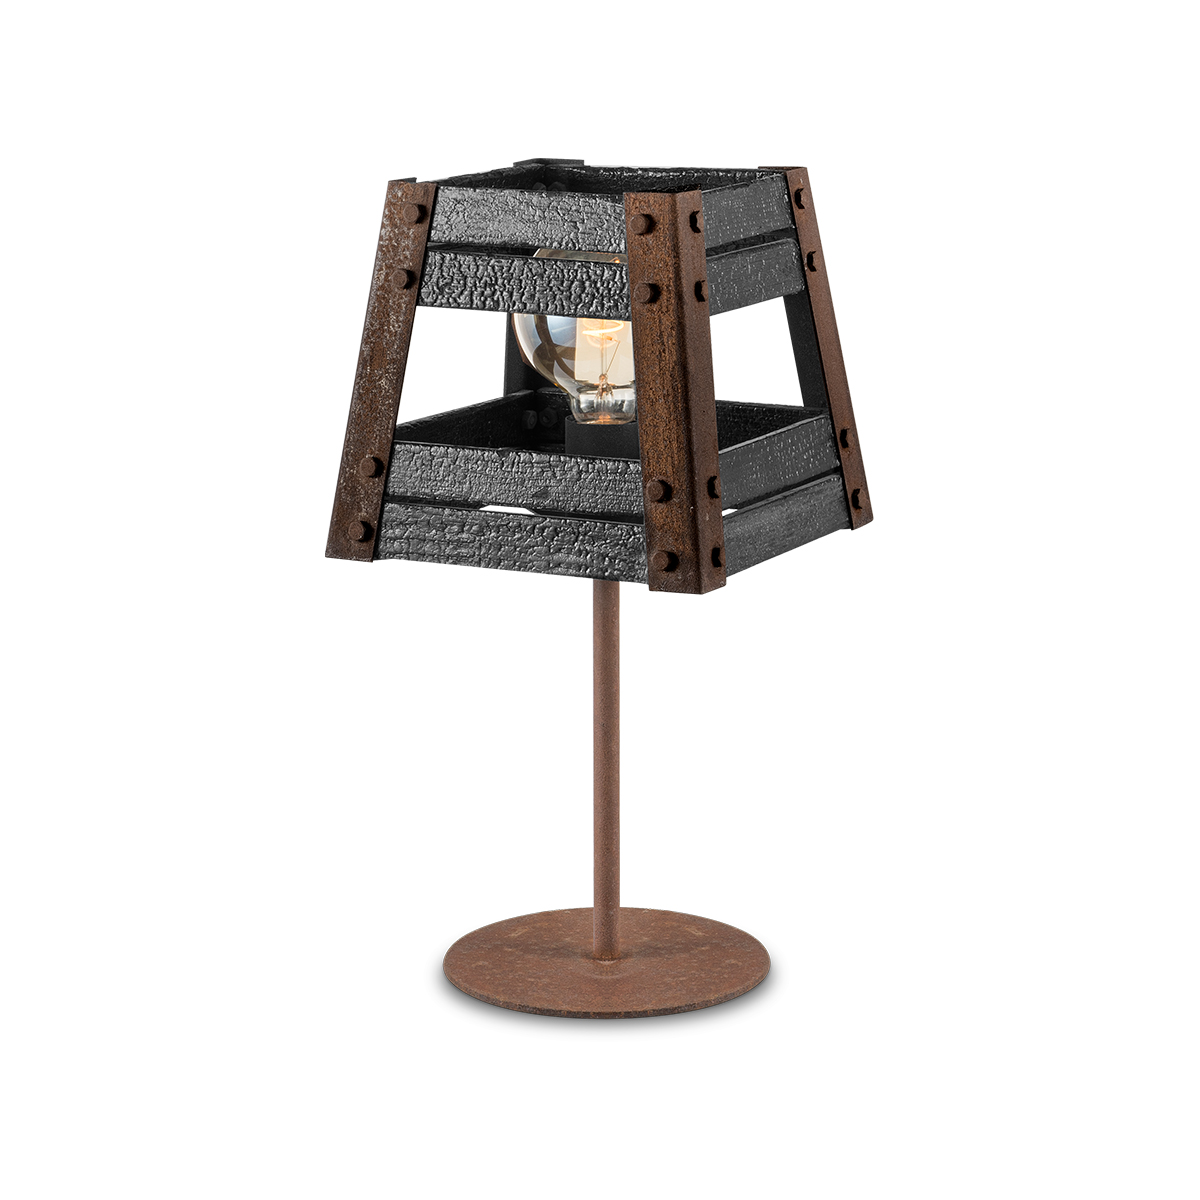 Tangla lighting - TLT1087-01RSBK - Table lamp 1 Light - metal + burned FSC wood - rusty + black - large - E27